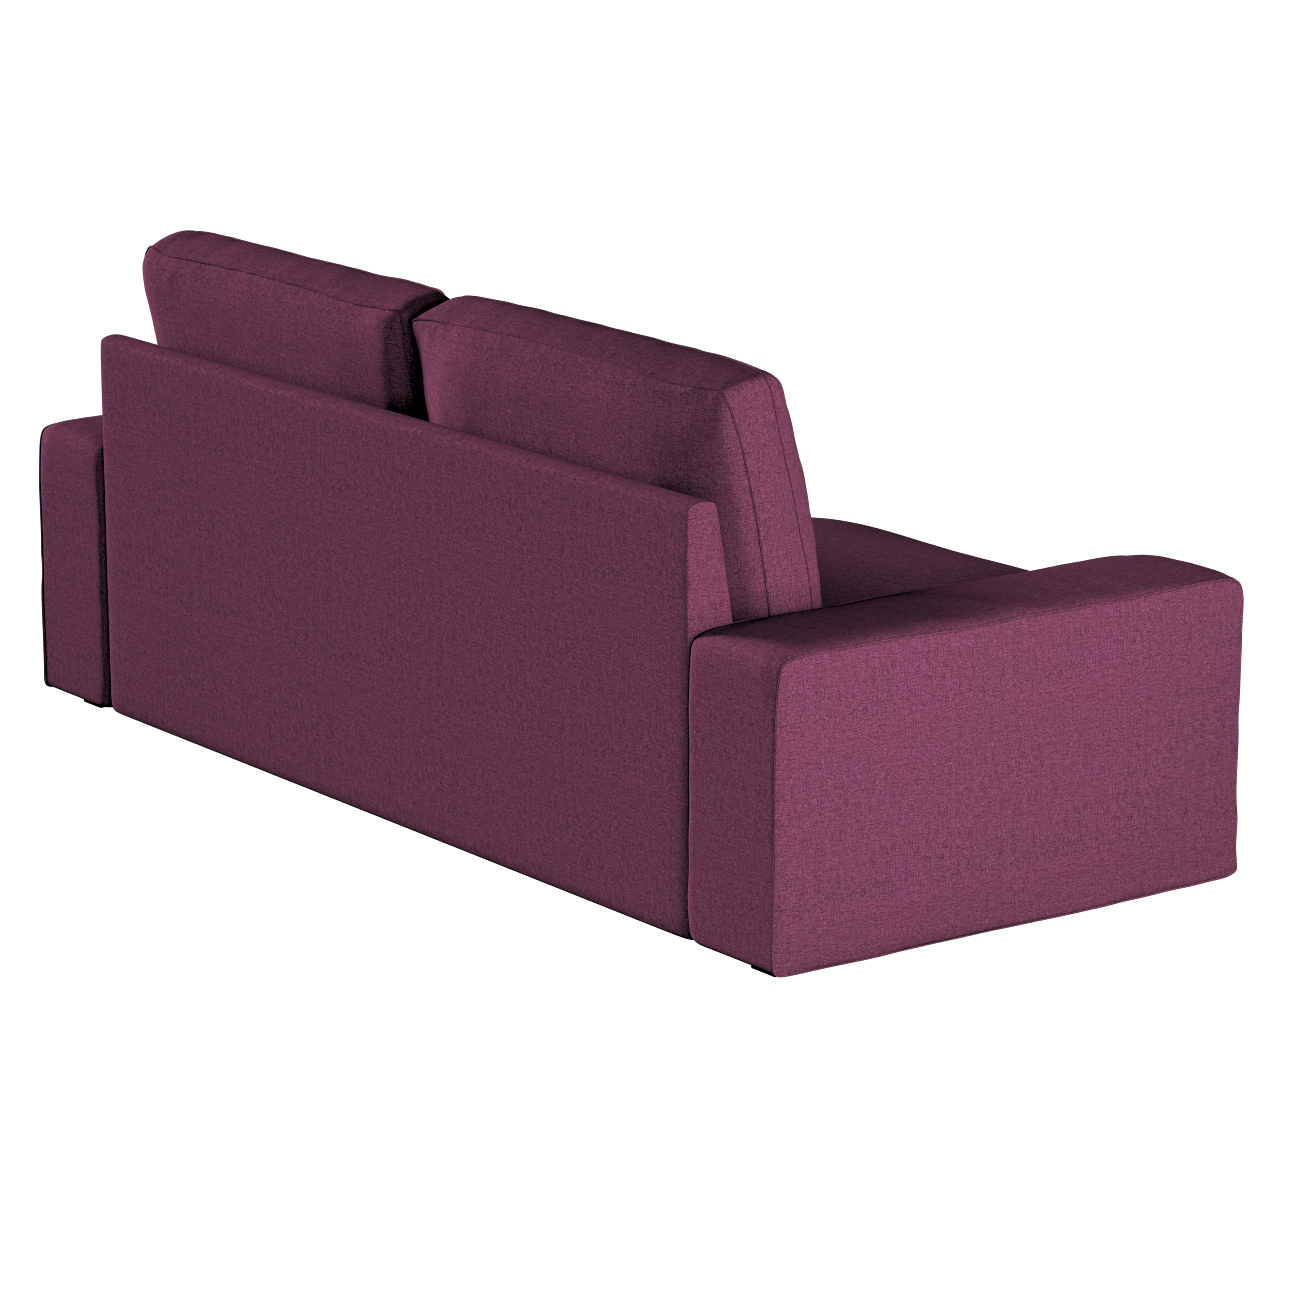 Bezug für Kivik 3-Sitzer Sofa, pflaumenviolett, Bezug für Sofa Kivik 3-Sitz günstig online kaufen